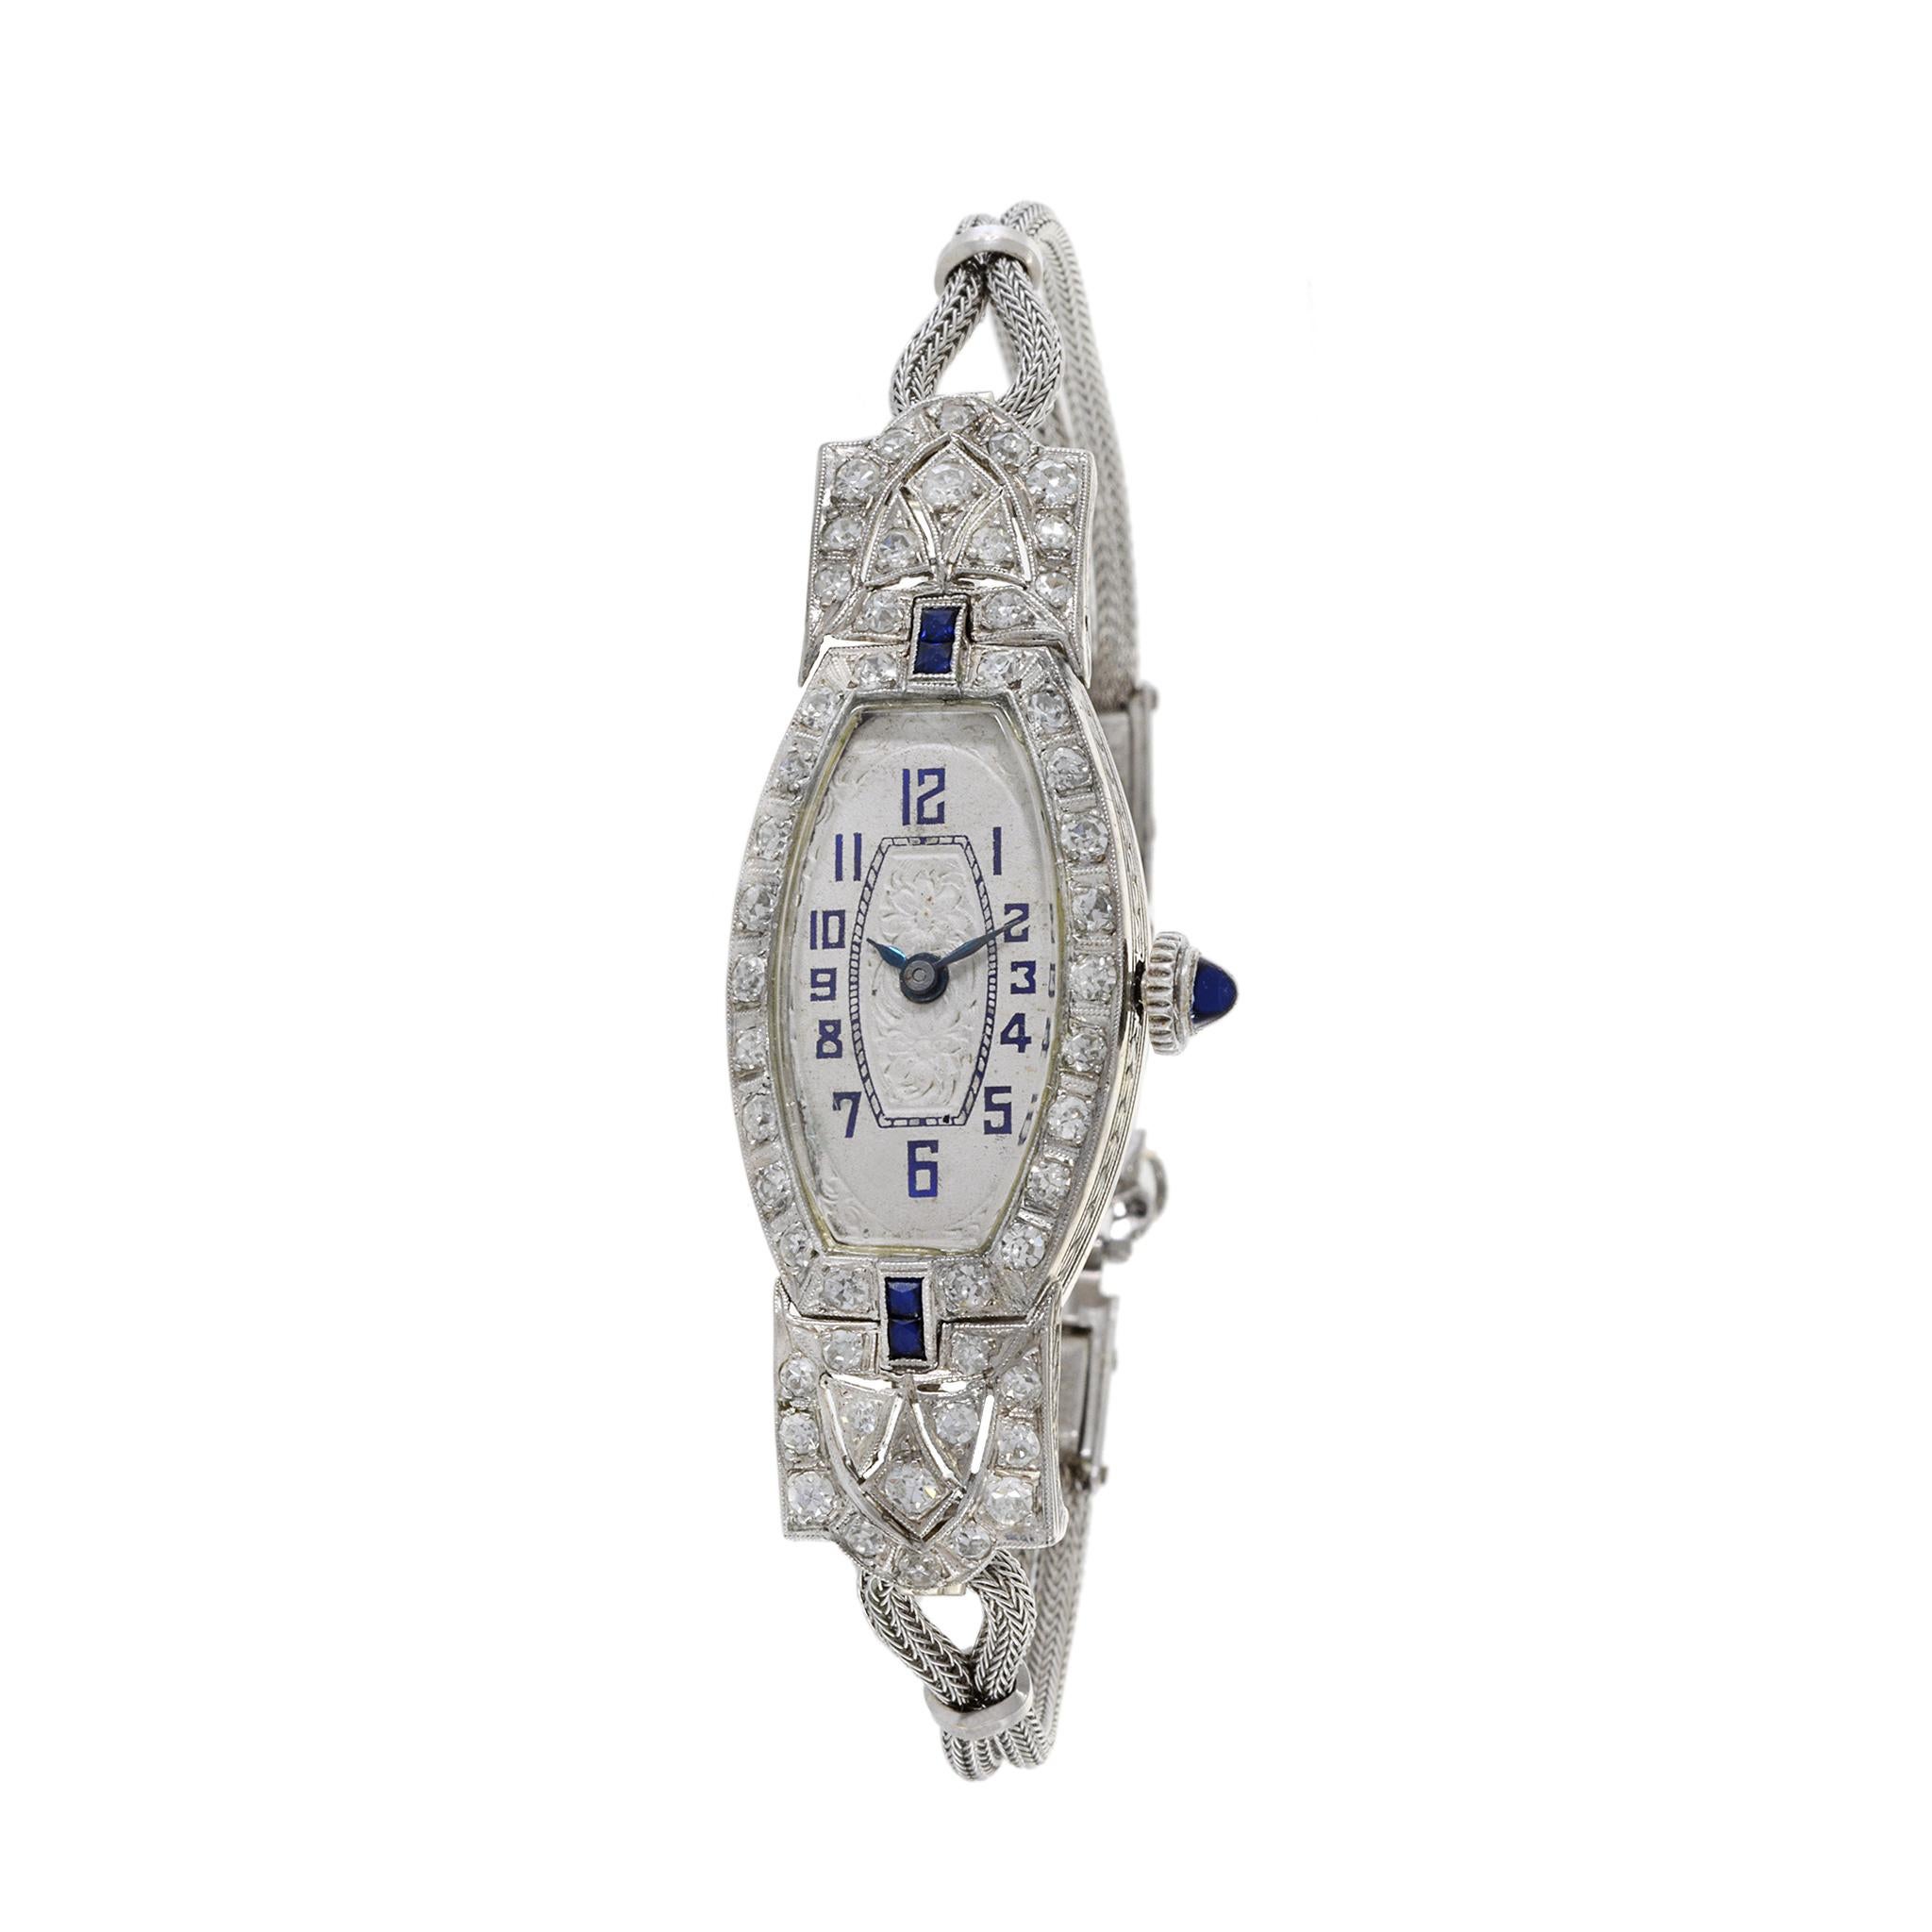 Voici une élégante montre de cocktail en platine des années 1950, ornée de diamants et de saphirs. La montre a un poids total de diamants de 1,50TDW. La montre est animée par un mouvement suisse de haute qualité à 17 rubis. 

Le boîtier mesure 18 mm